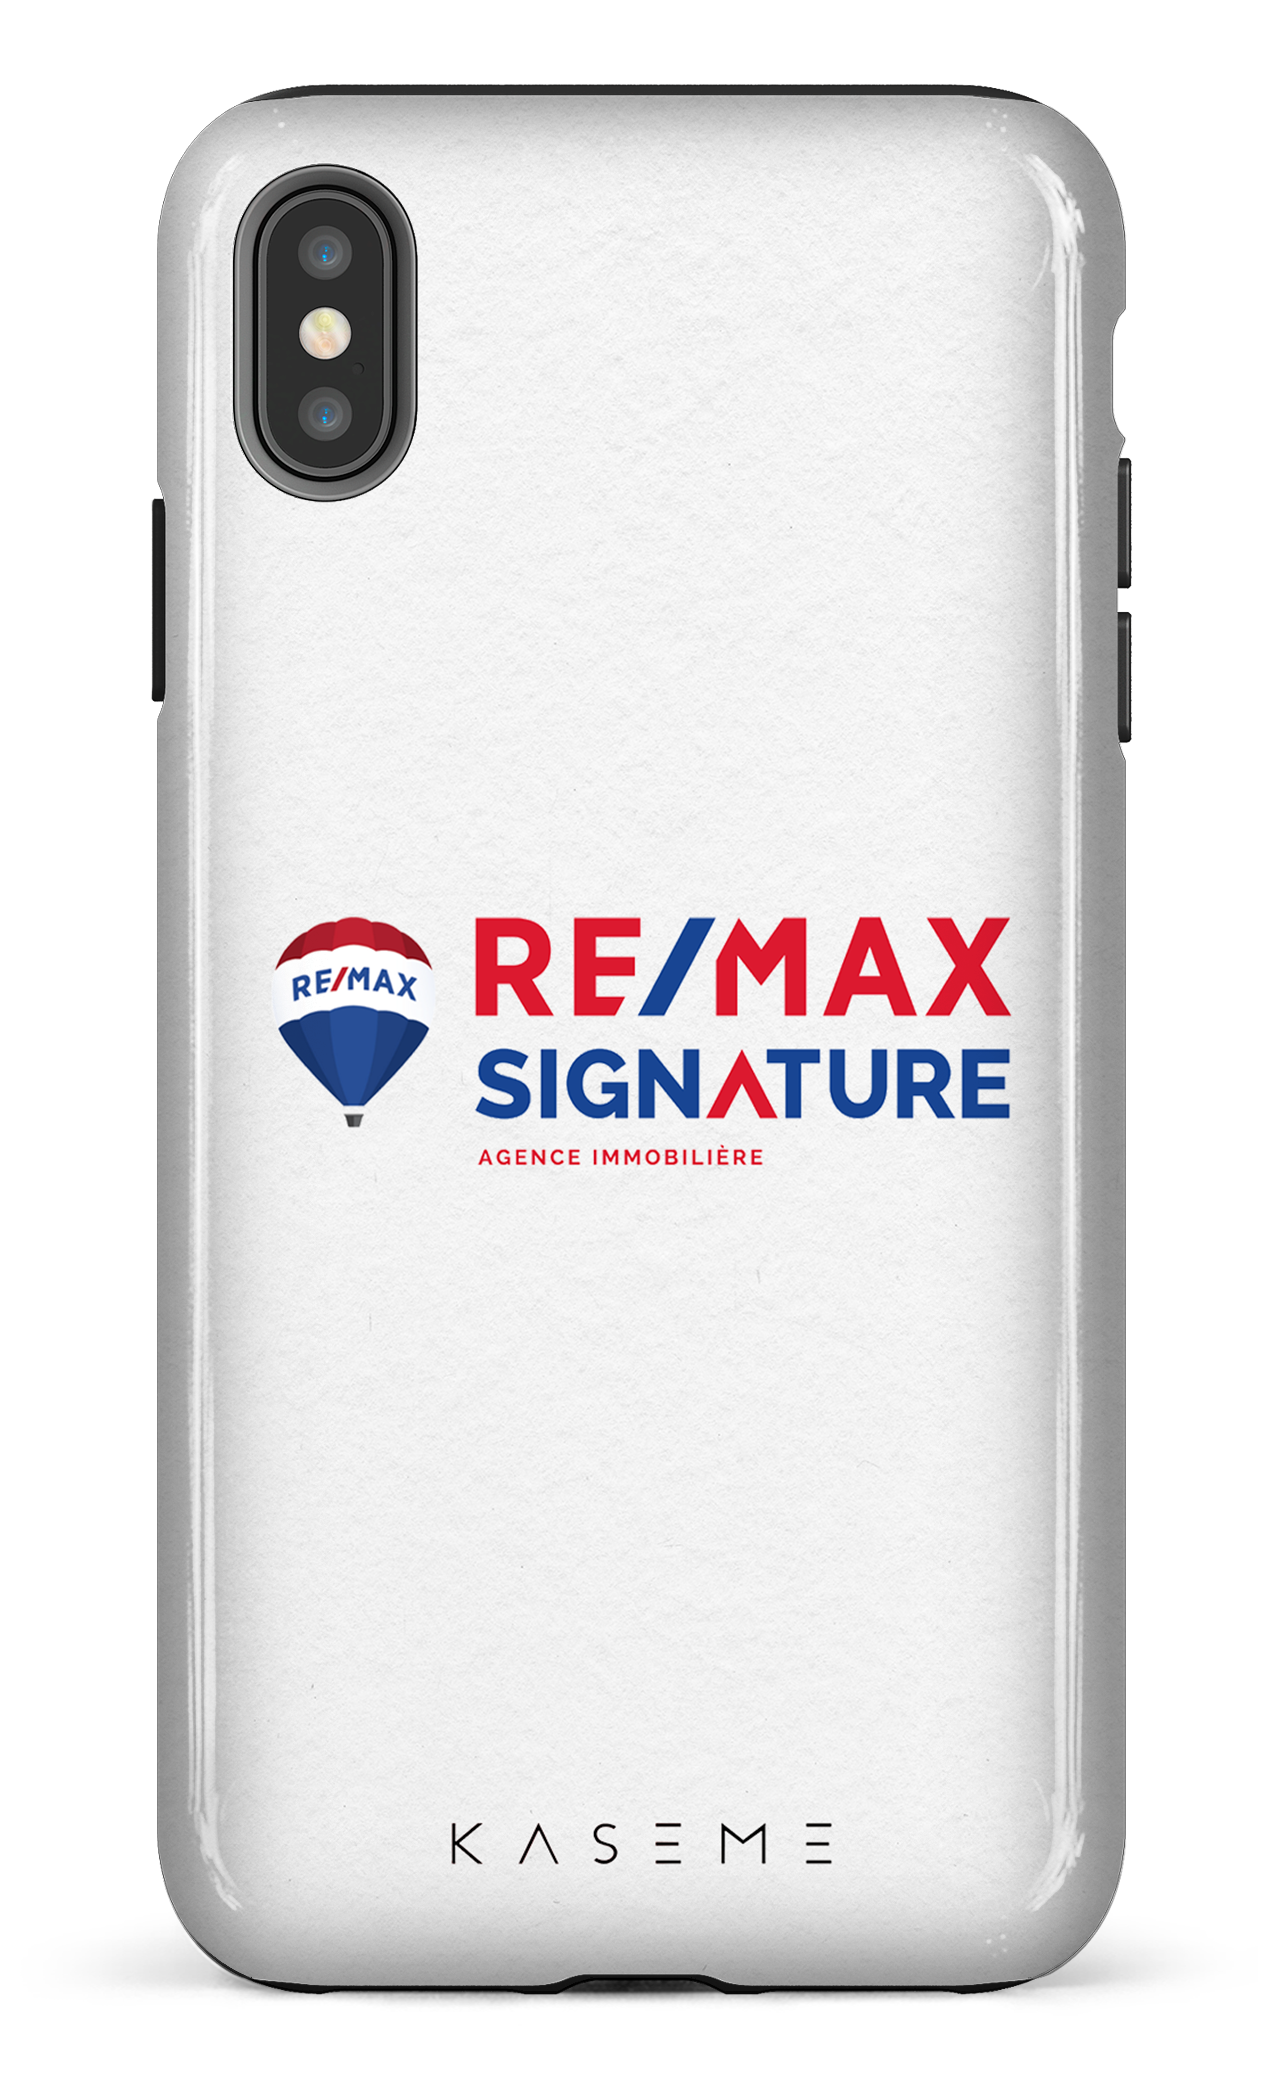 Remax Signature Blanc - iPhone XS Max